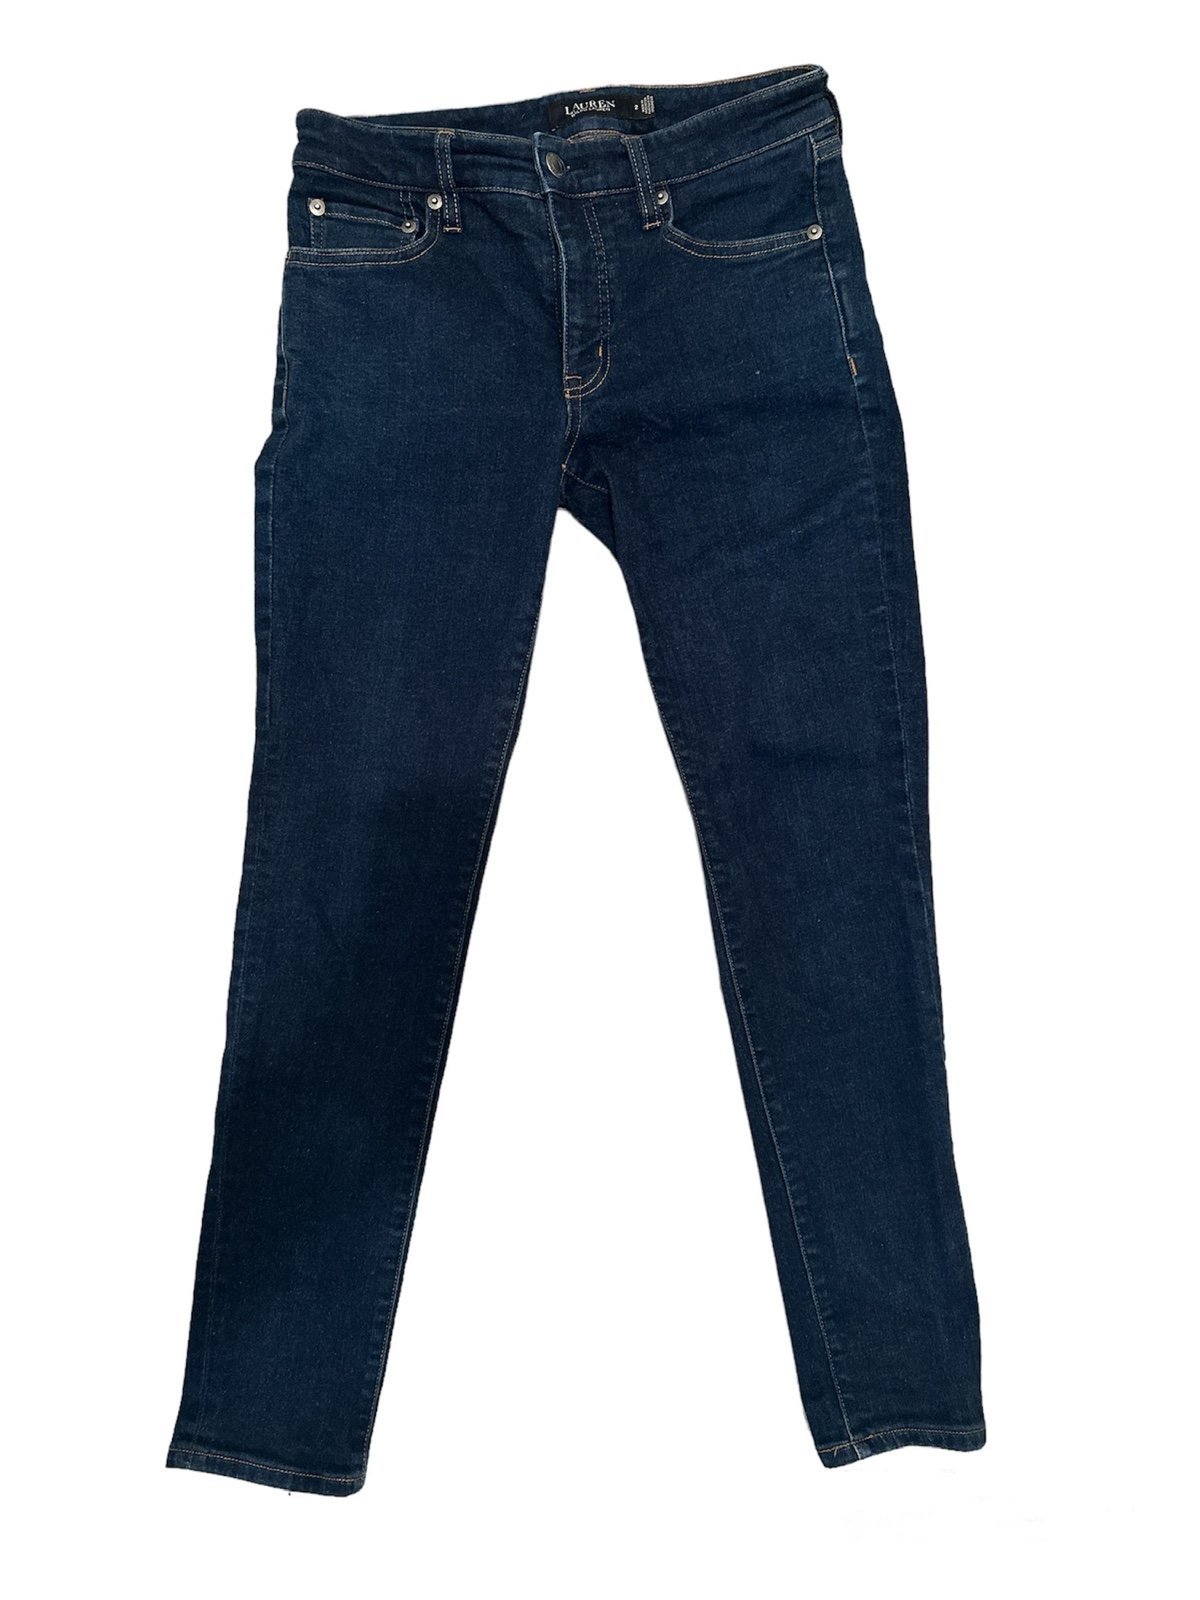 Classic Ralph Lauren jeans JqYxLj6lH Outlet Store